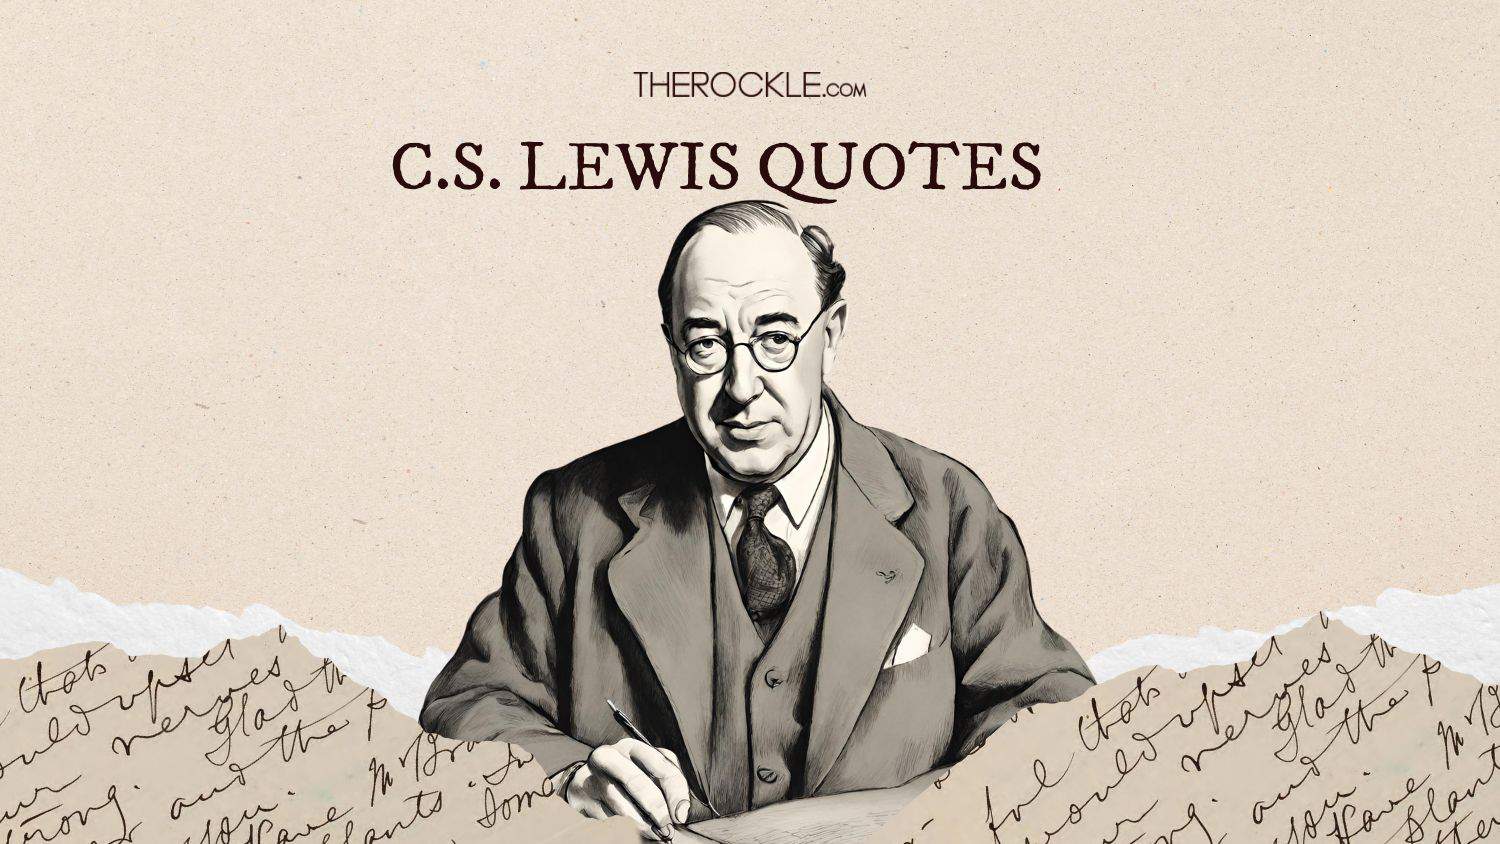 C.S. Lewis quotes